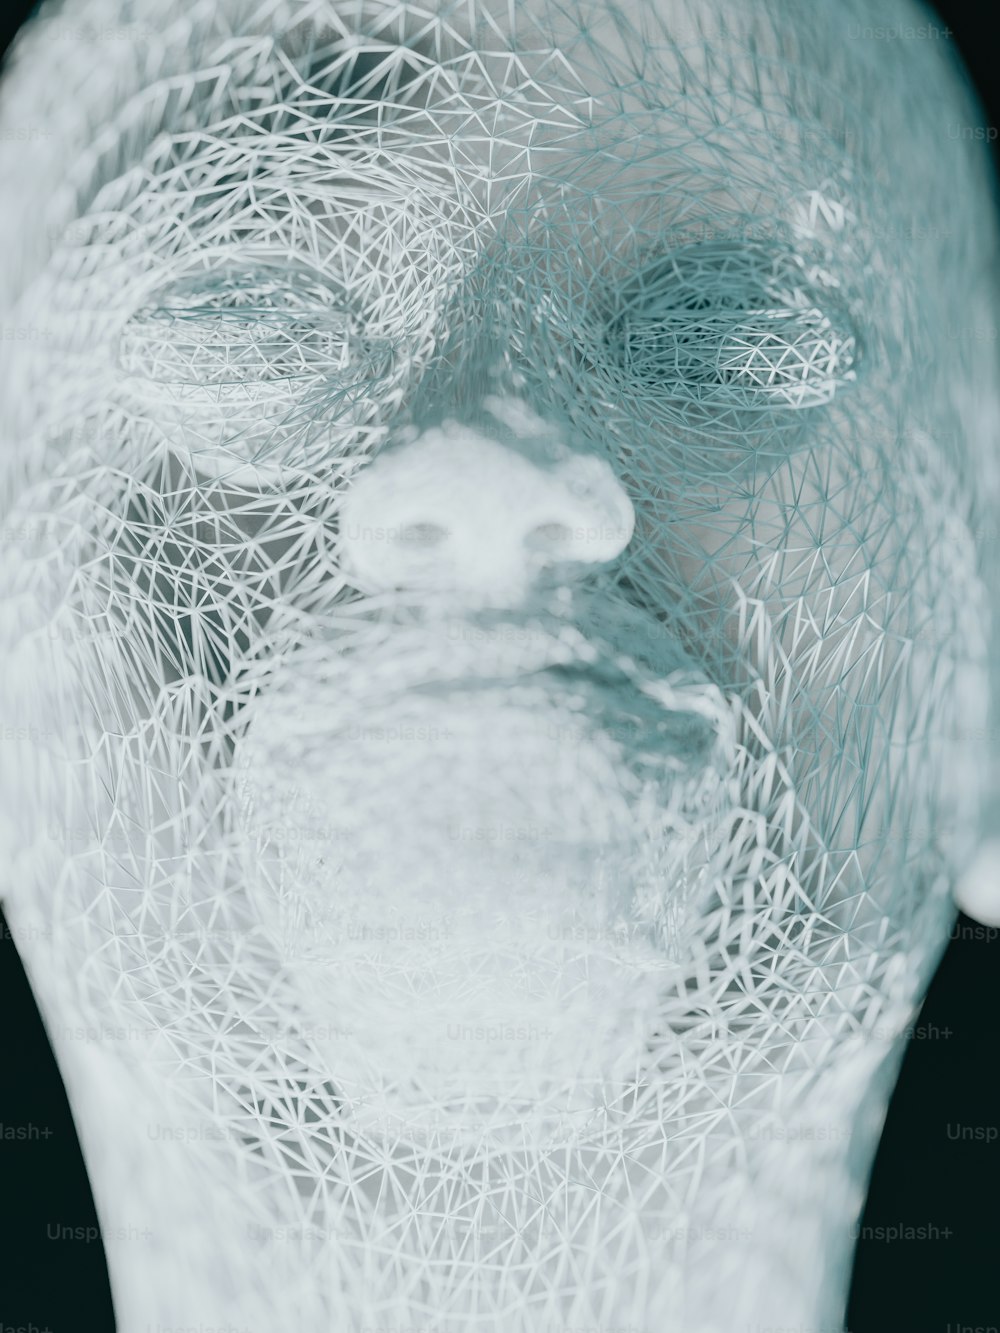 Un primer plano de la cara de una persona hecho de alambre